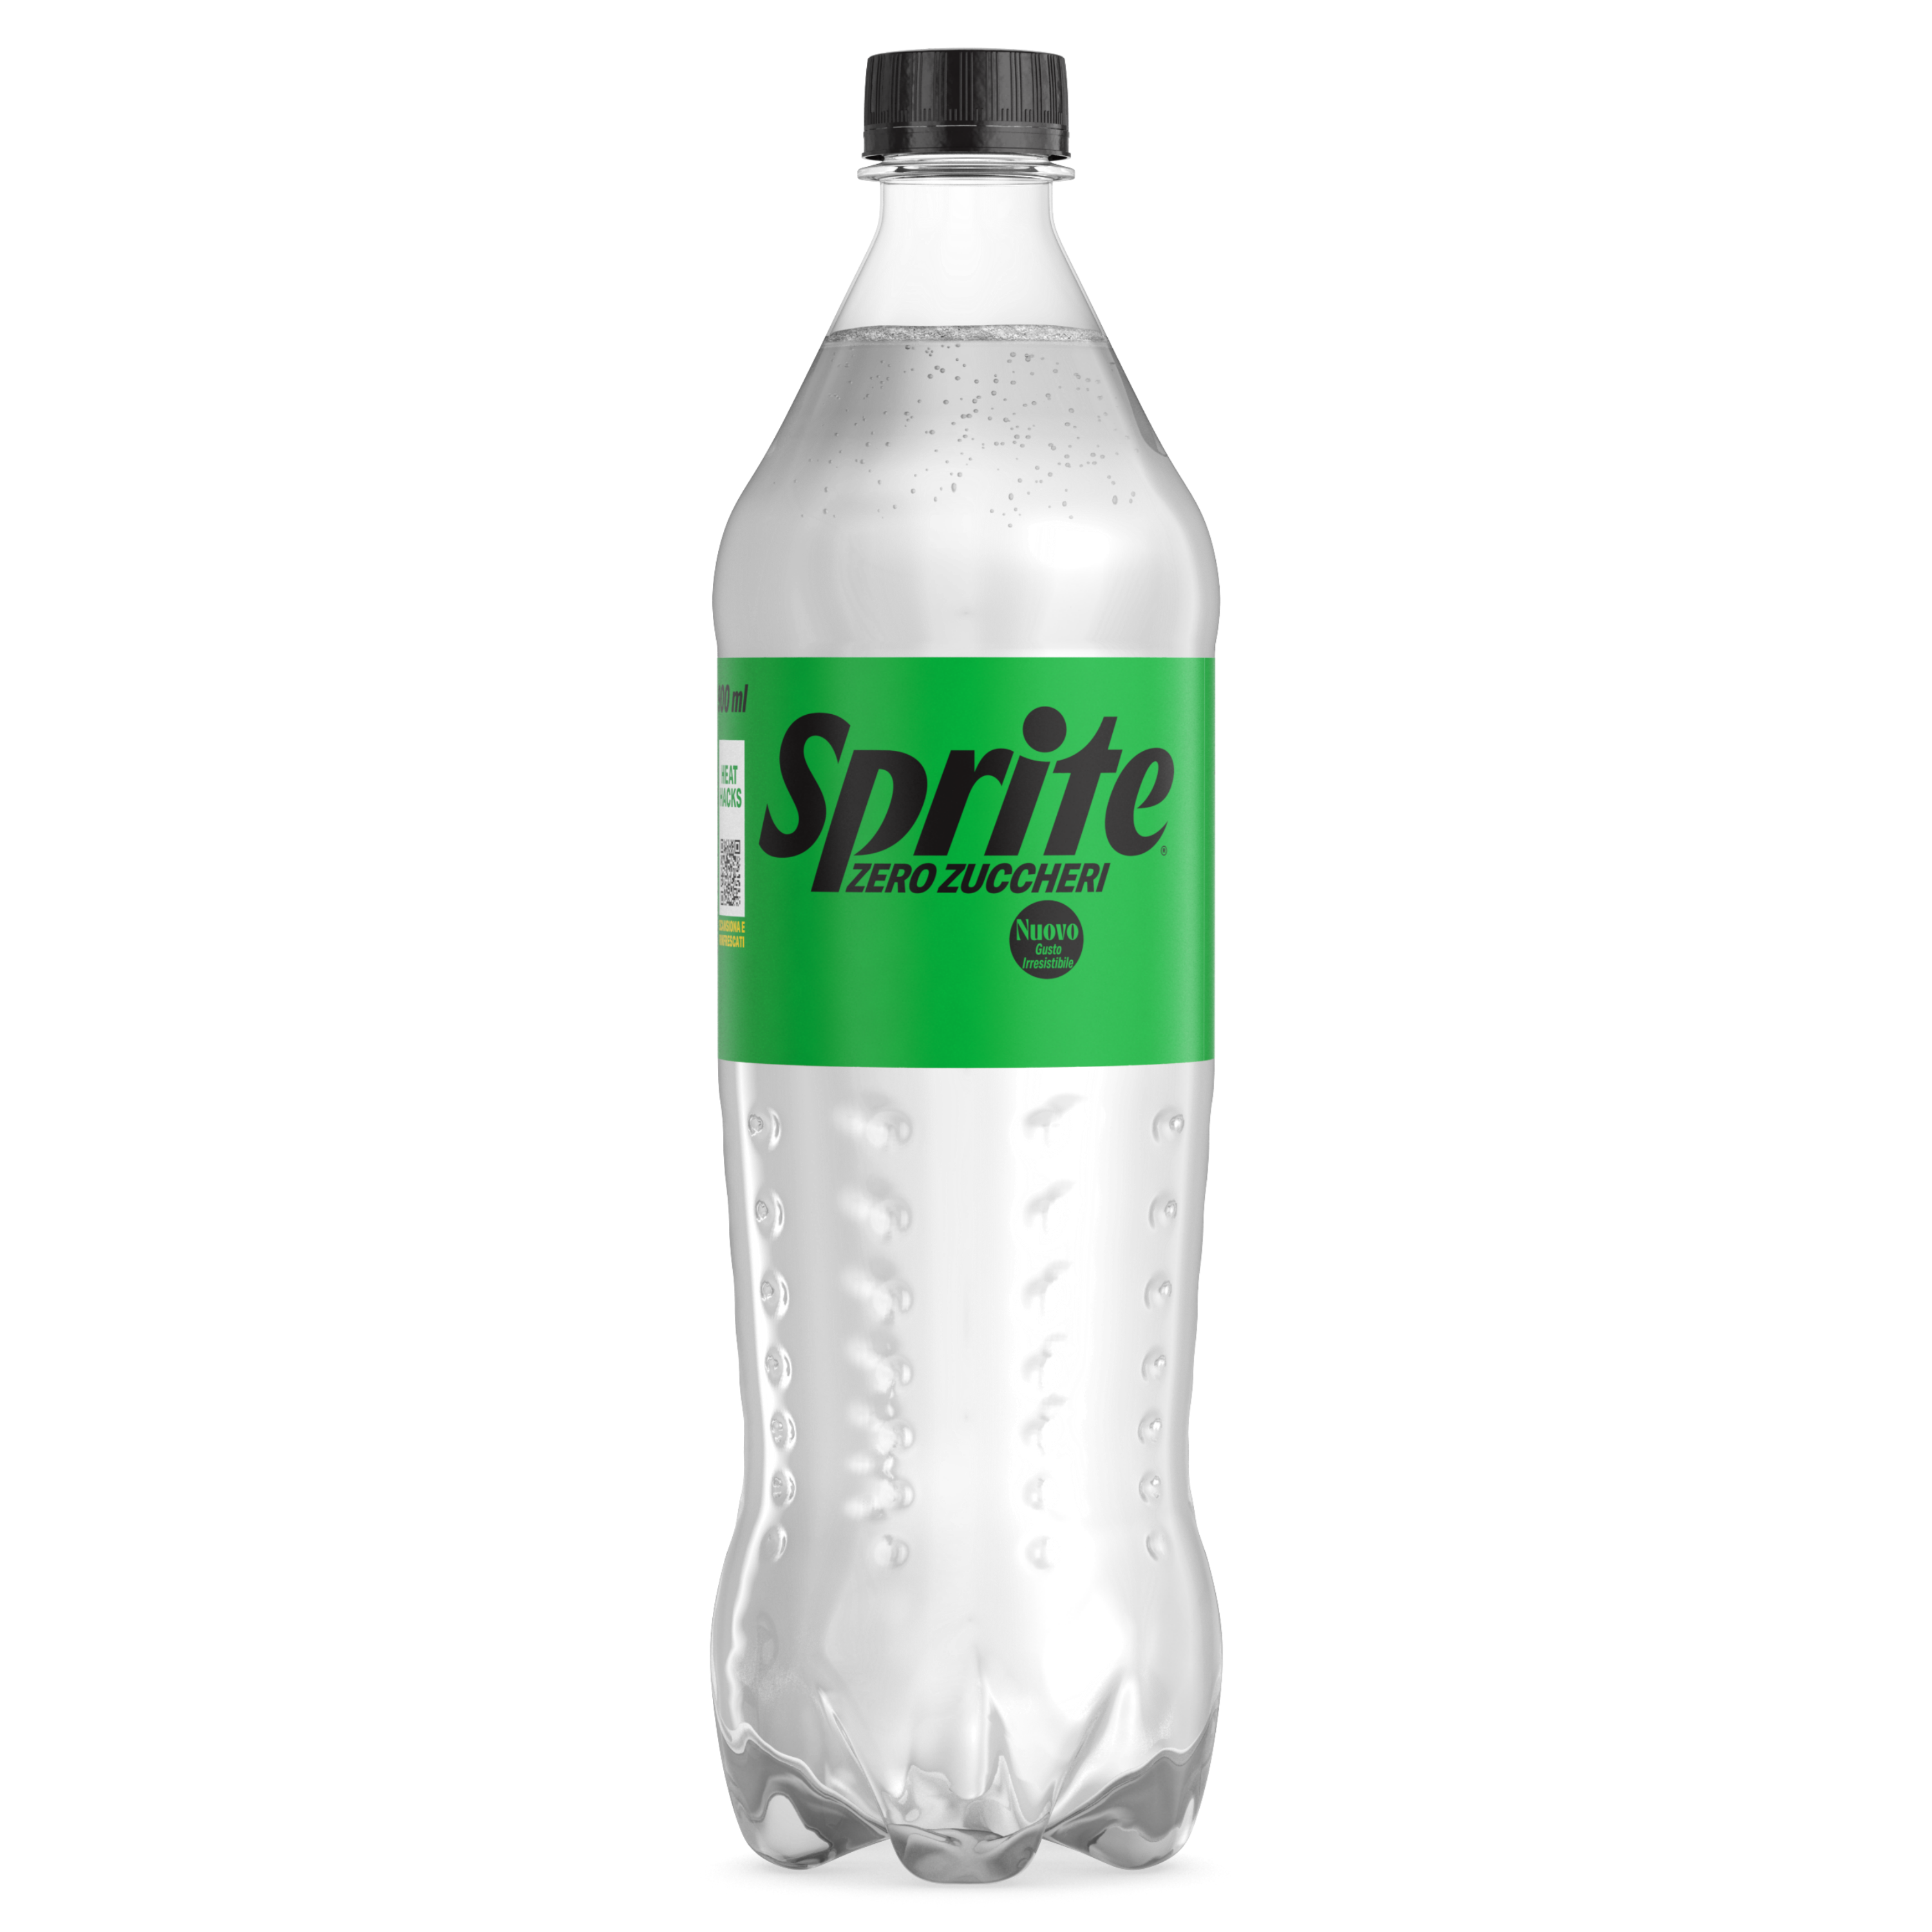 Una bottiglia di Sprite Zero Zuccheri.